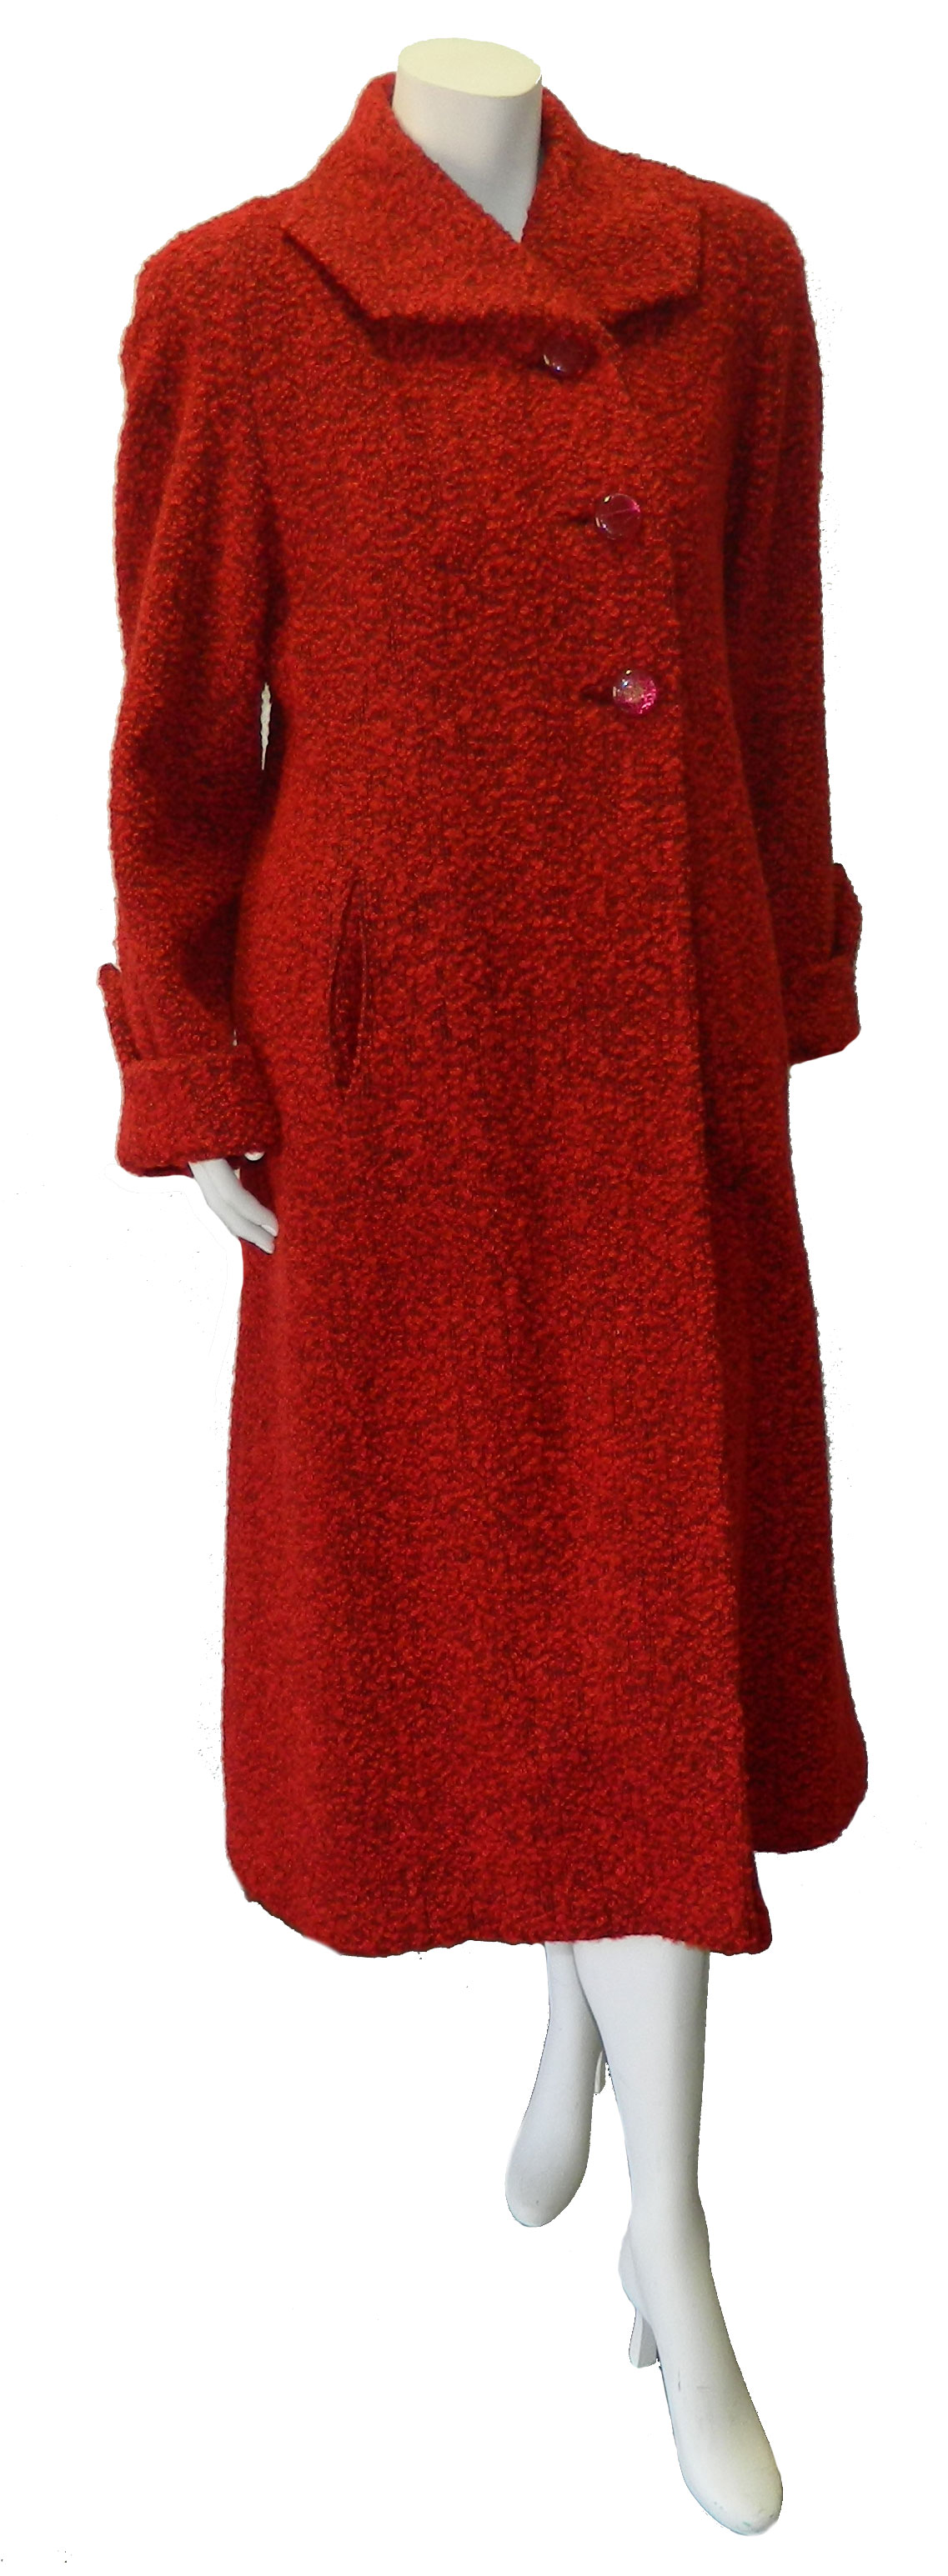 1950's red tweed coat